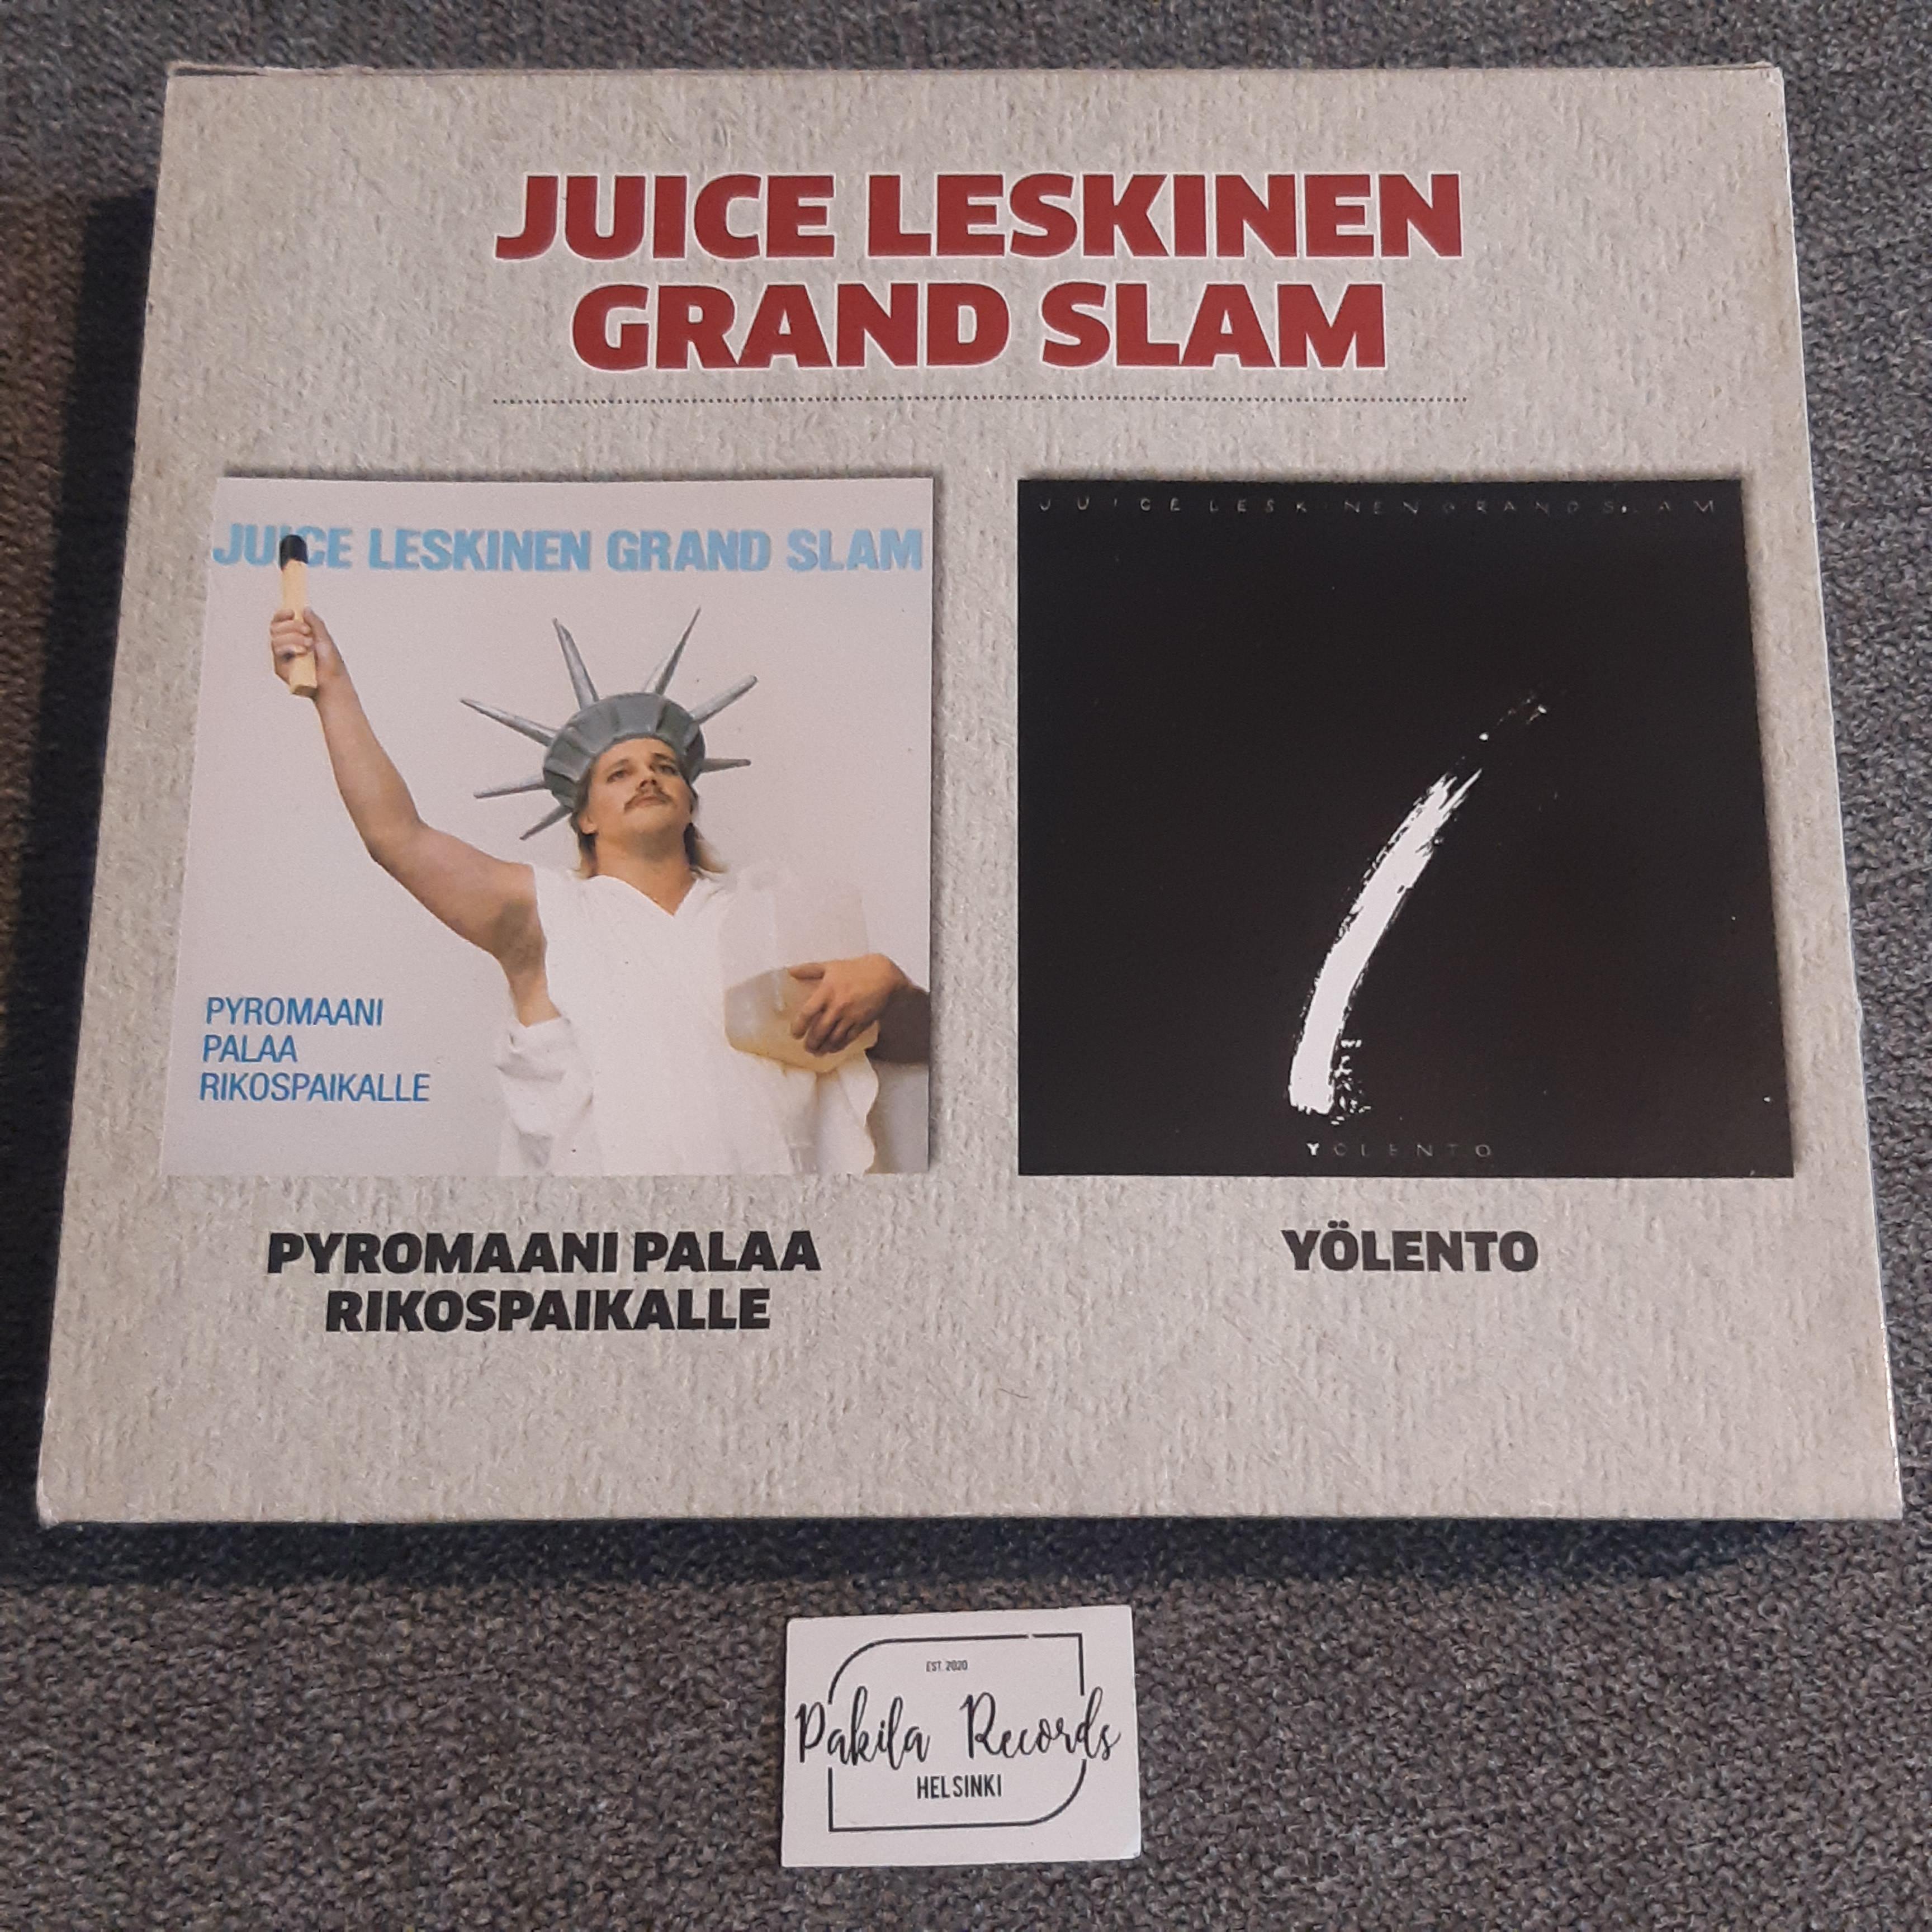 Juice Leskinen Grand Slam - Pyromaani palaa rikospaikalle / Yölento - 2 CD (käytetty)